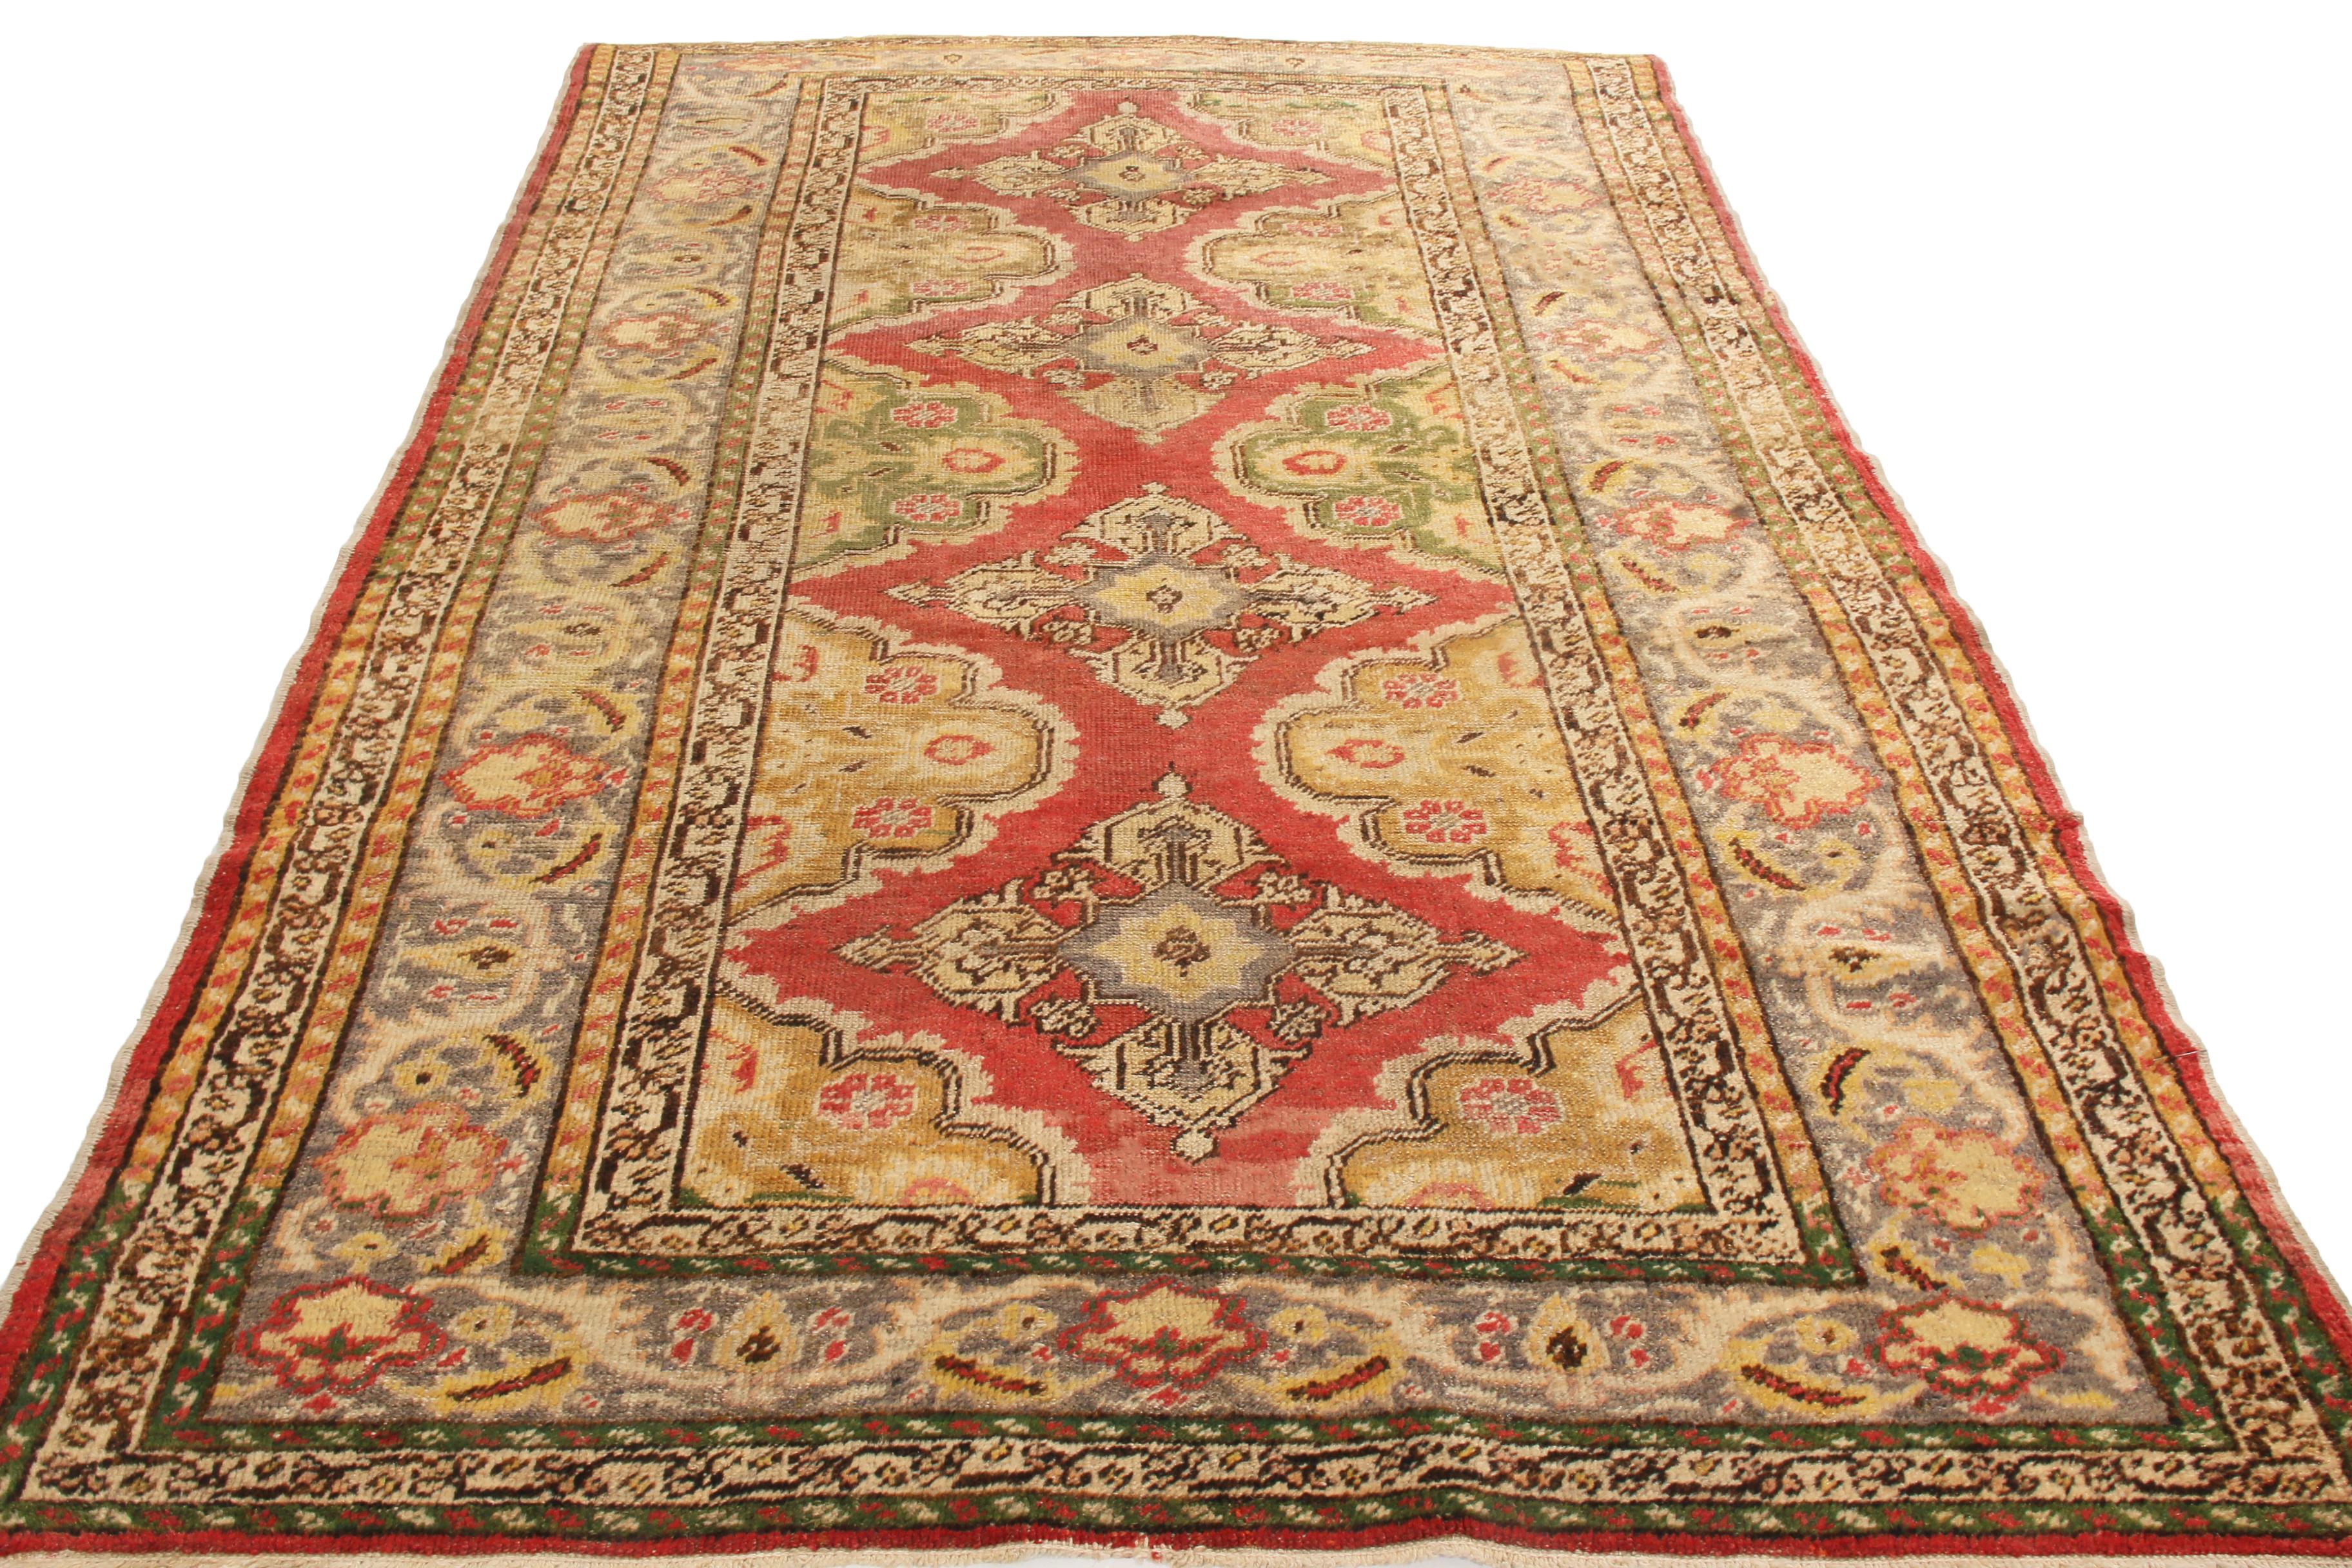 Dieser antike traditionelle Kayseri-Teppich stammt aus der Türkei aus dem Jahr 1910 und hat eine einzigartige Farbausrichtung, die seine universelle Symmetrie ergänzt. Der rote Hintergrund des aus hochwertiger Wolle handgeknüpften Feldes hebt vier